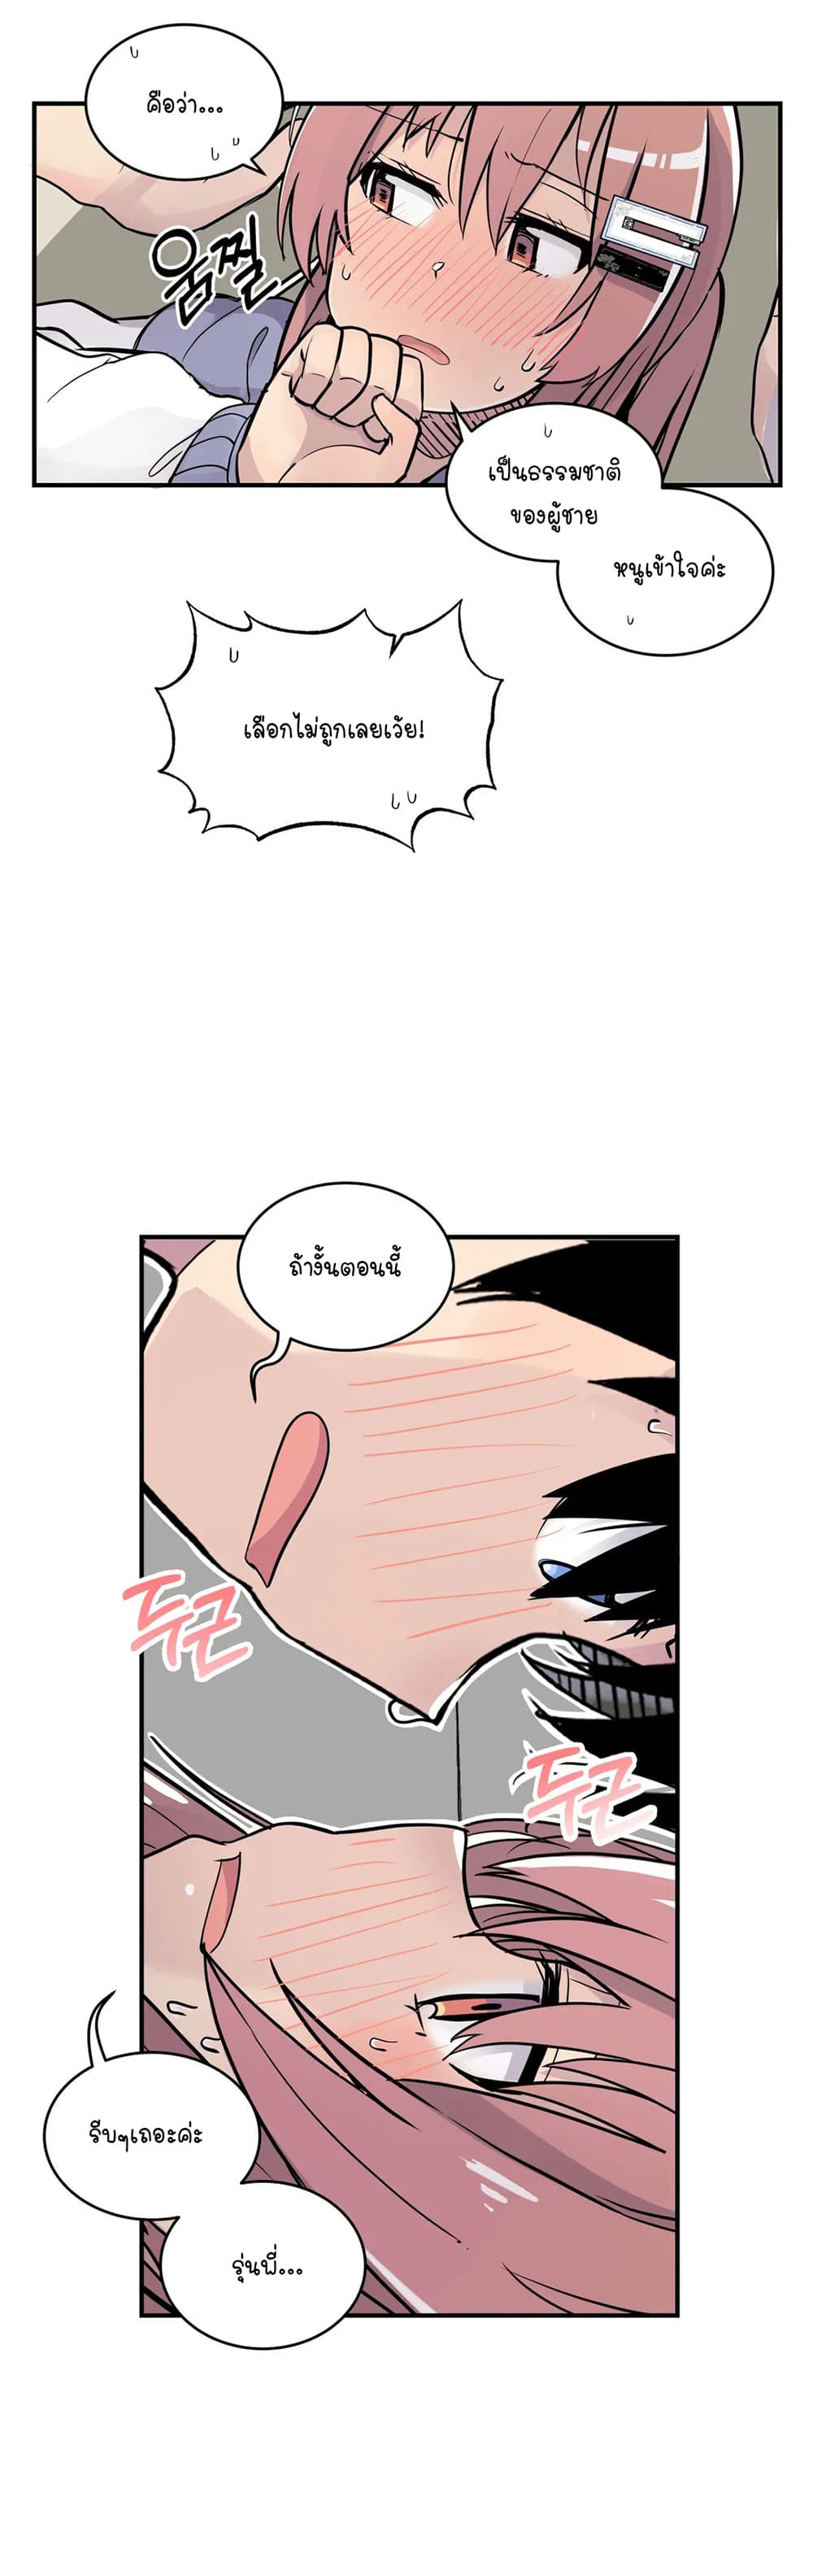 Erotic Manga Club ชมรมการ์ตูนอีโรติก 34-34